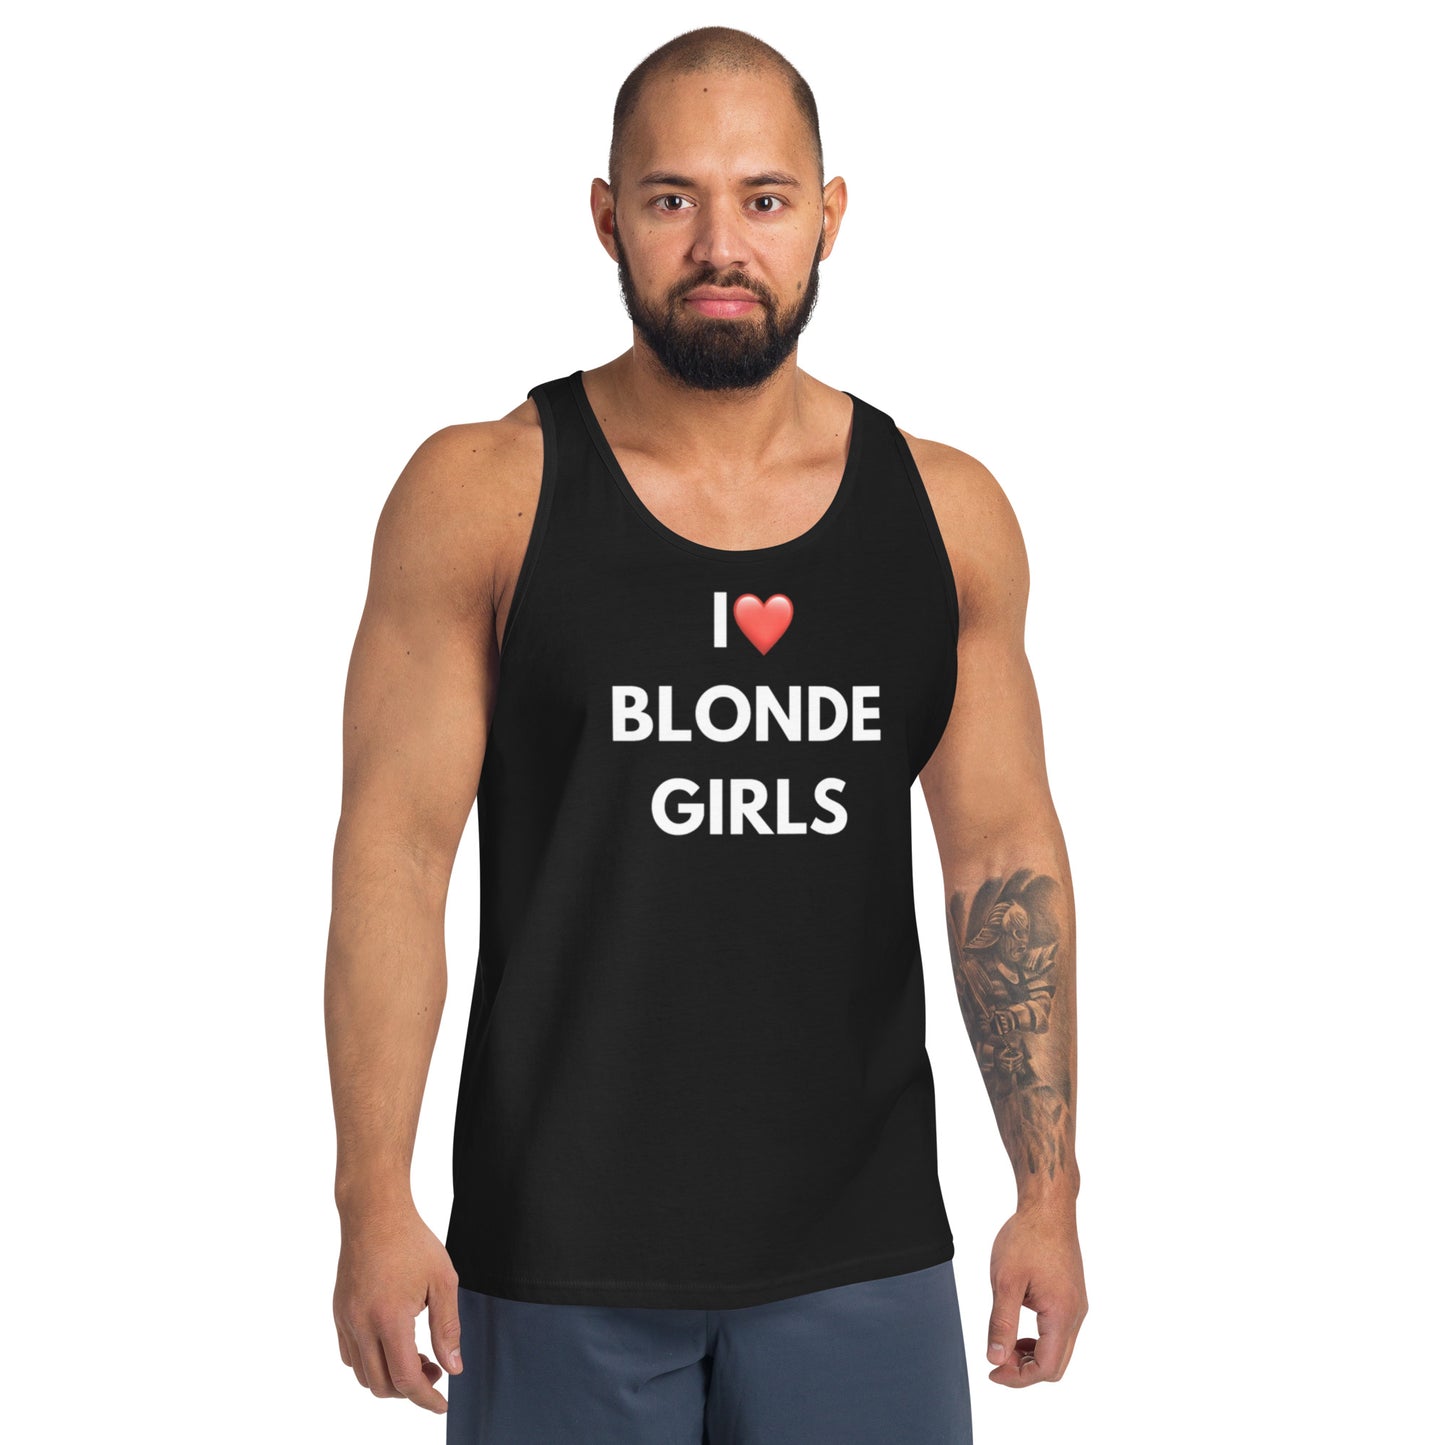 Blonde Girls Tank top